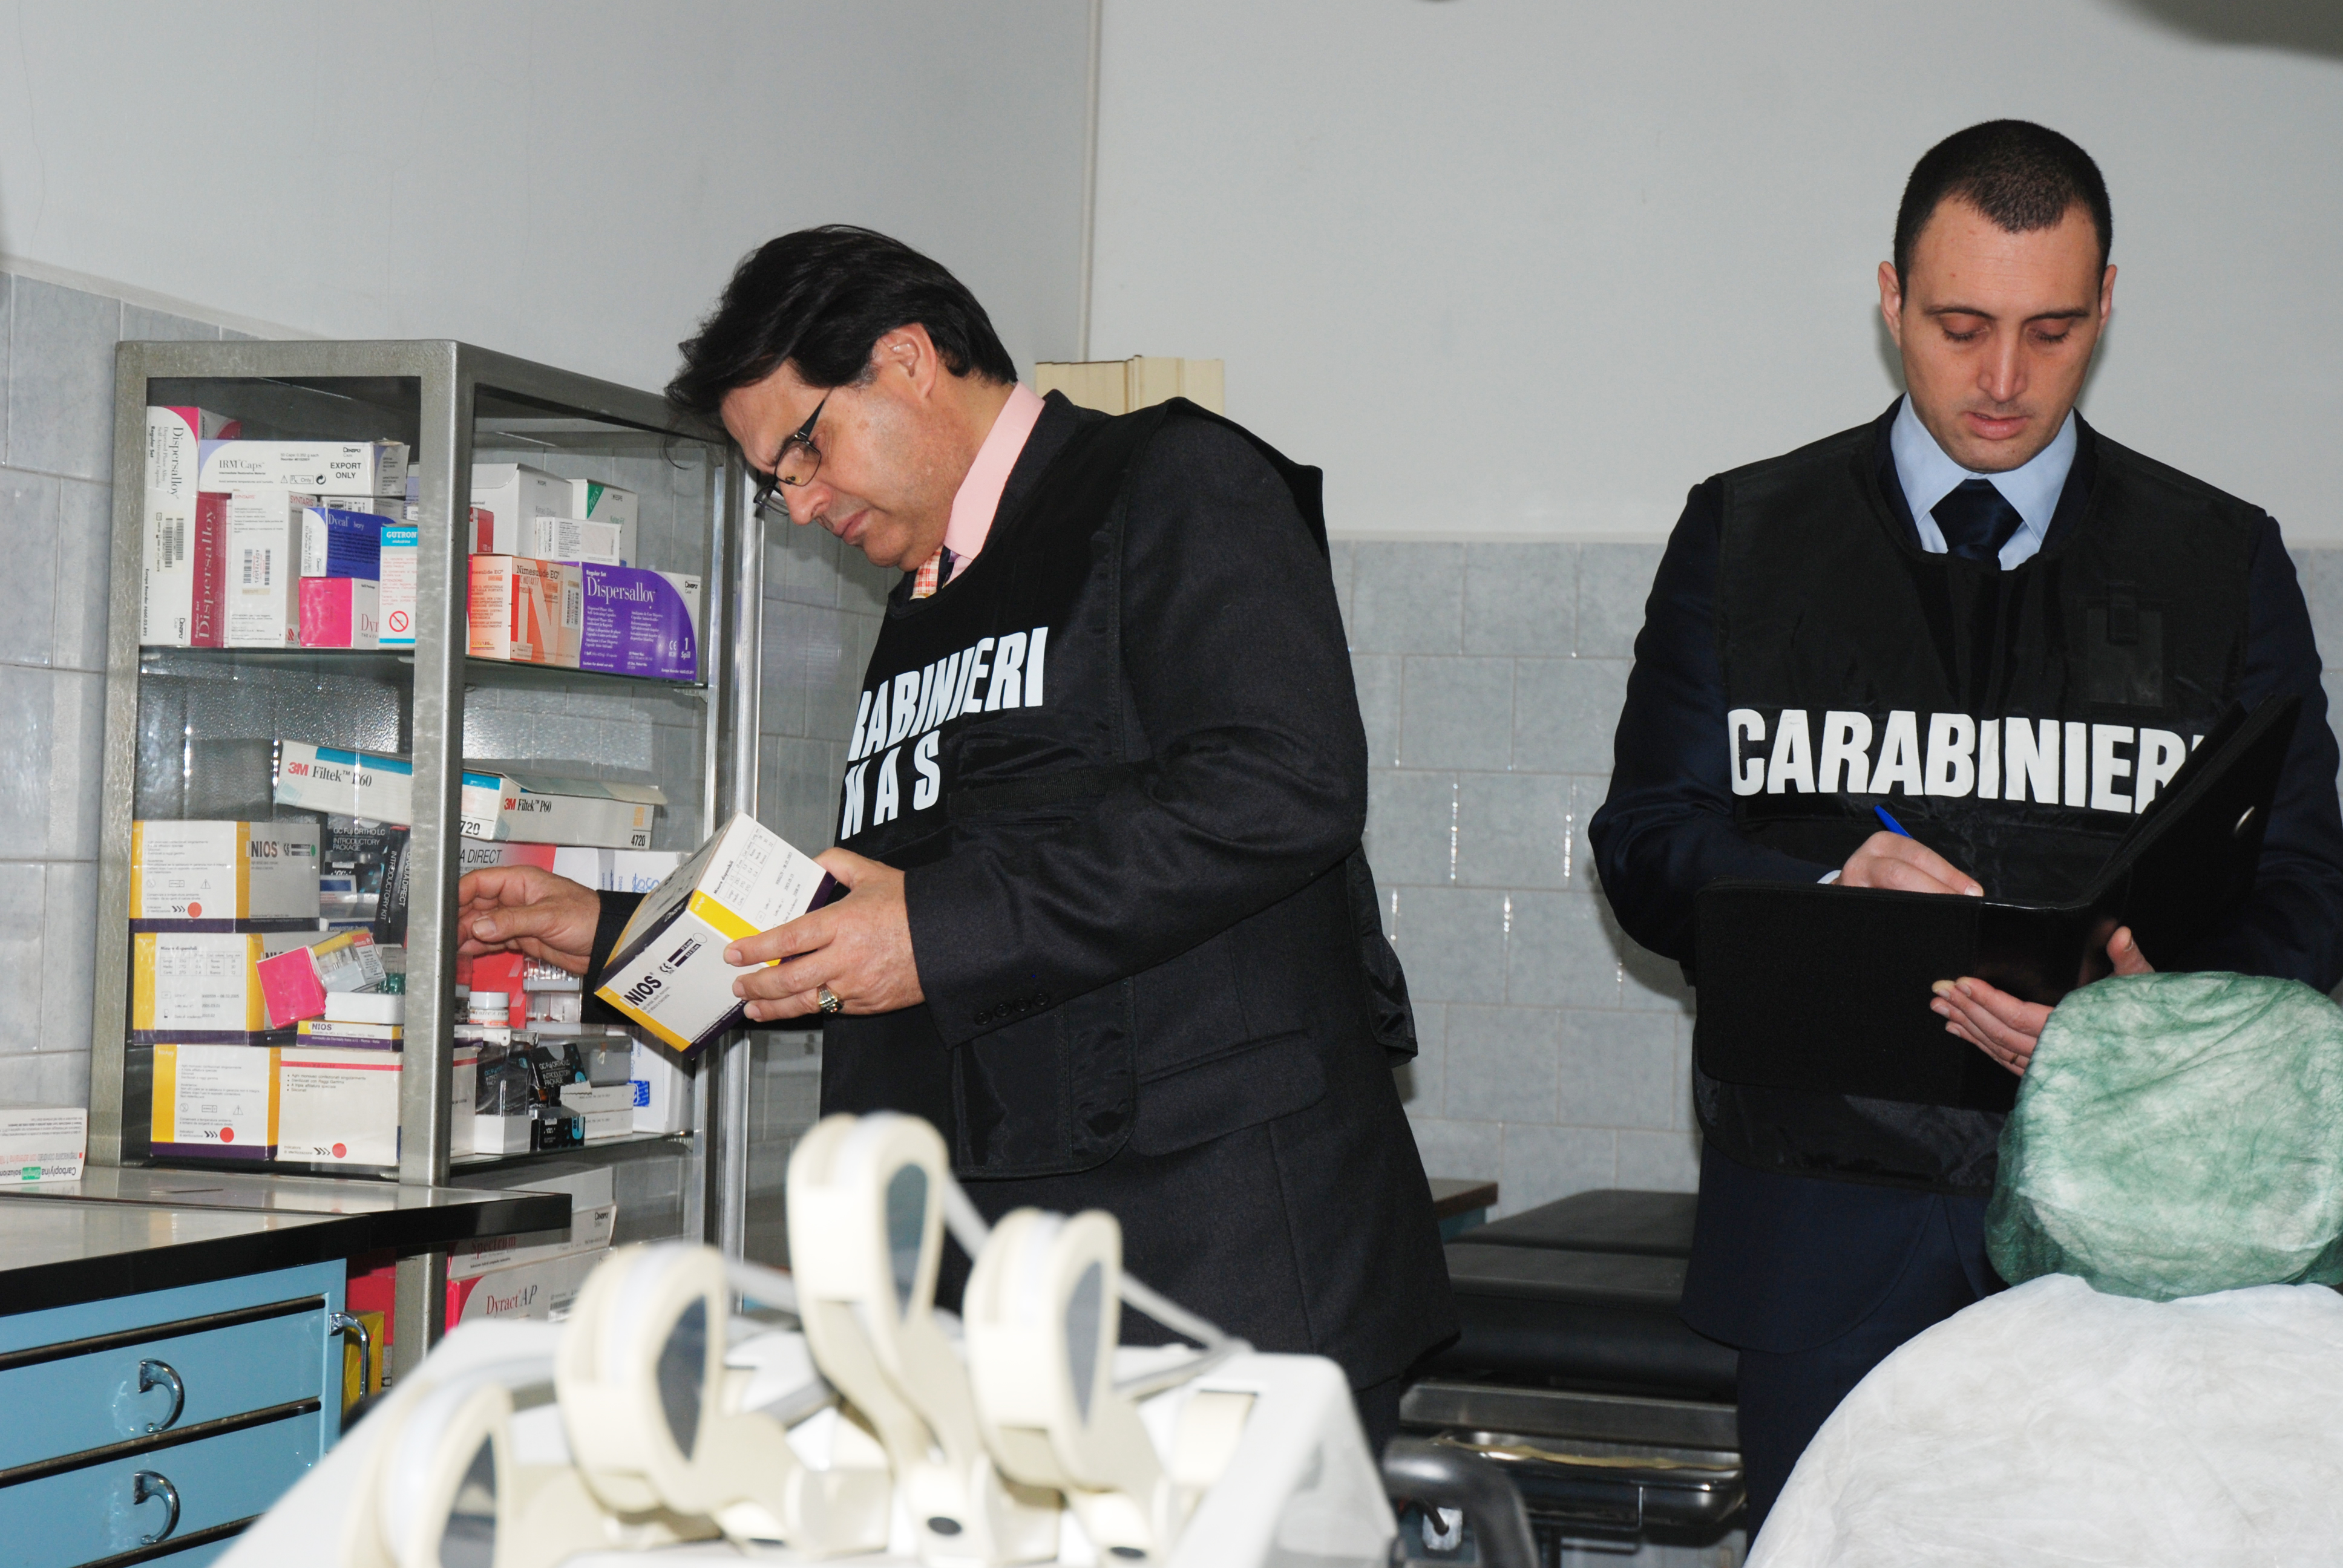 due carabinieri del nas durante una attività ispettiva presso una struttura sanitaria